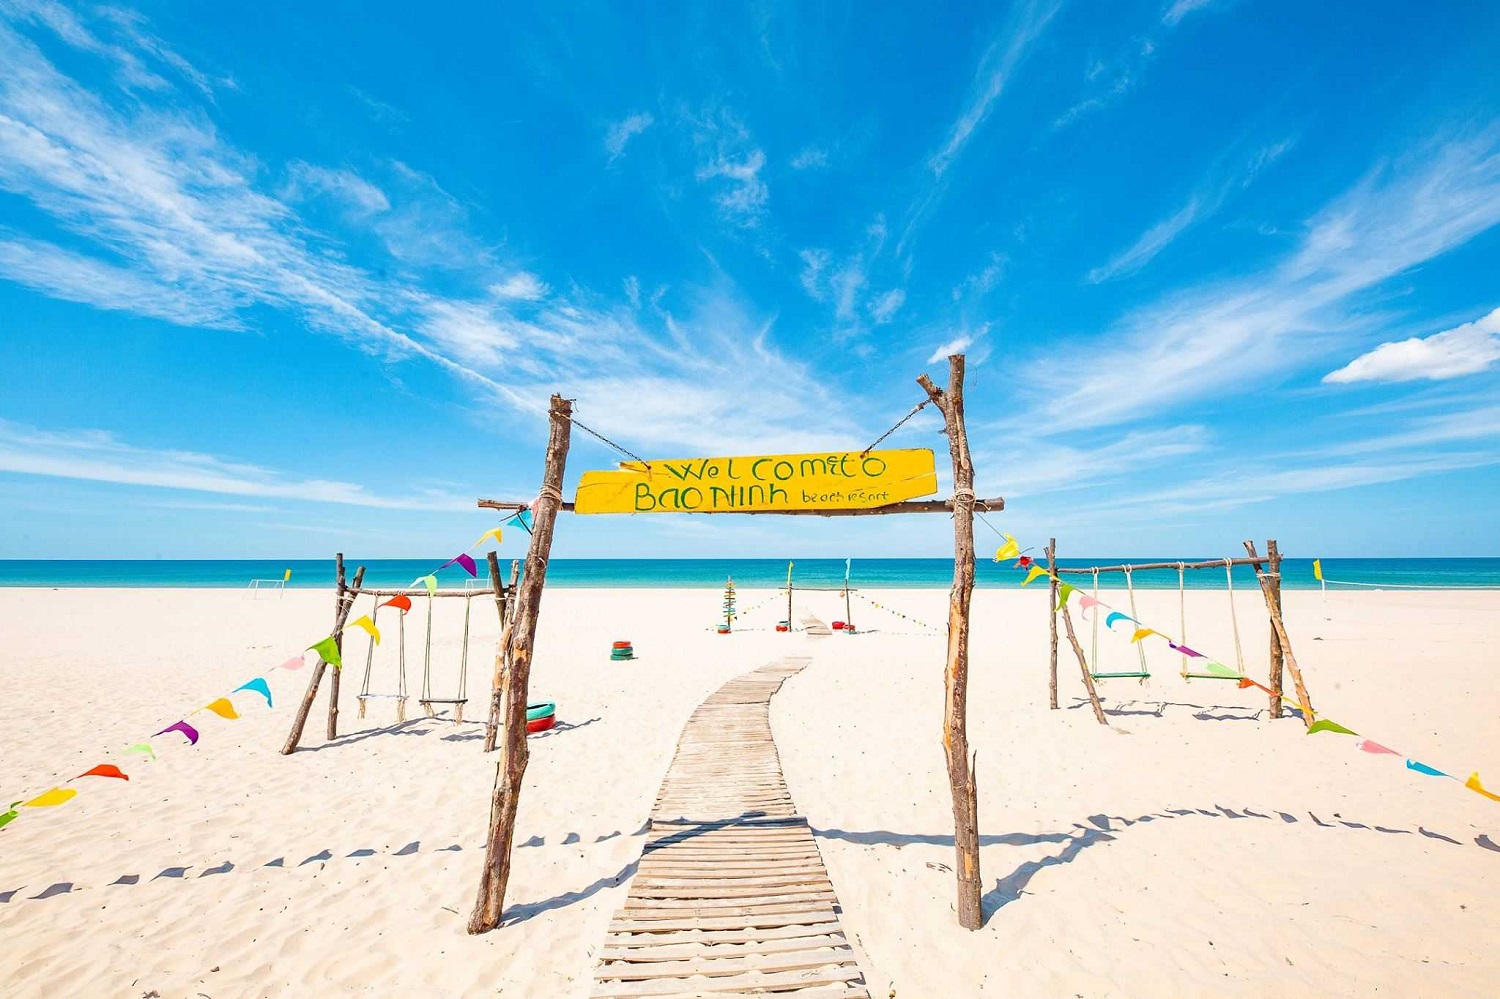 Ghé thăm Bãi biển Bảo Ninh Quảng Bình với vẻ đẹp cực cuốn hút 5